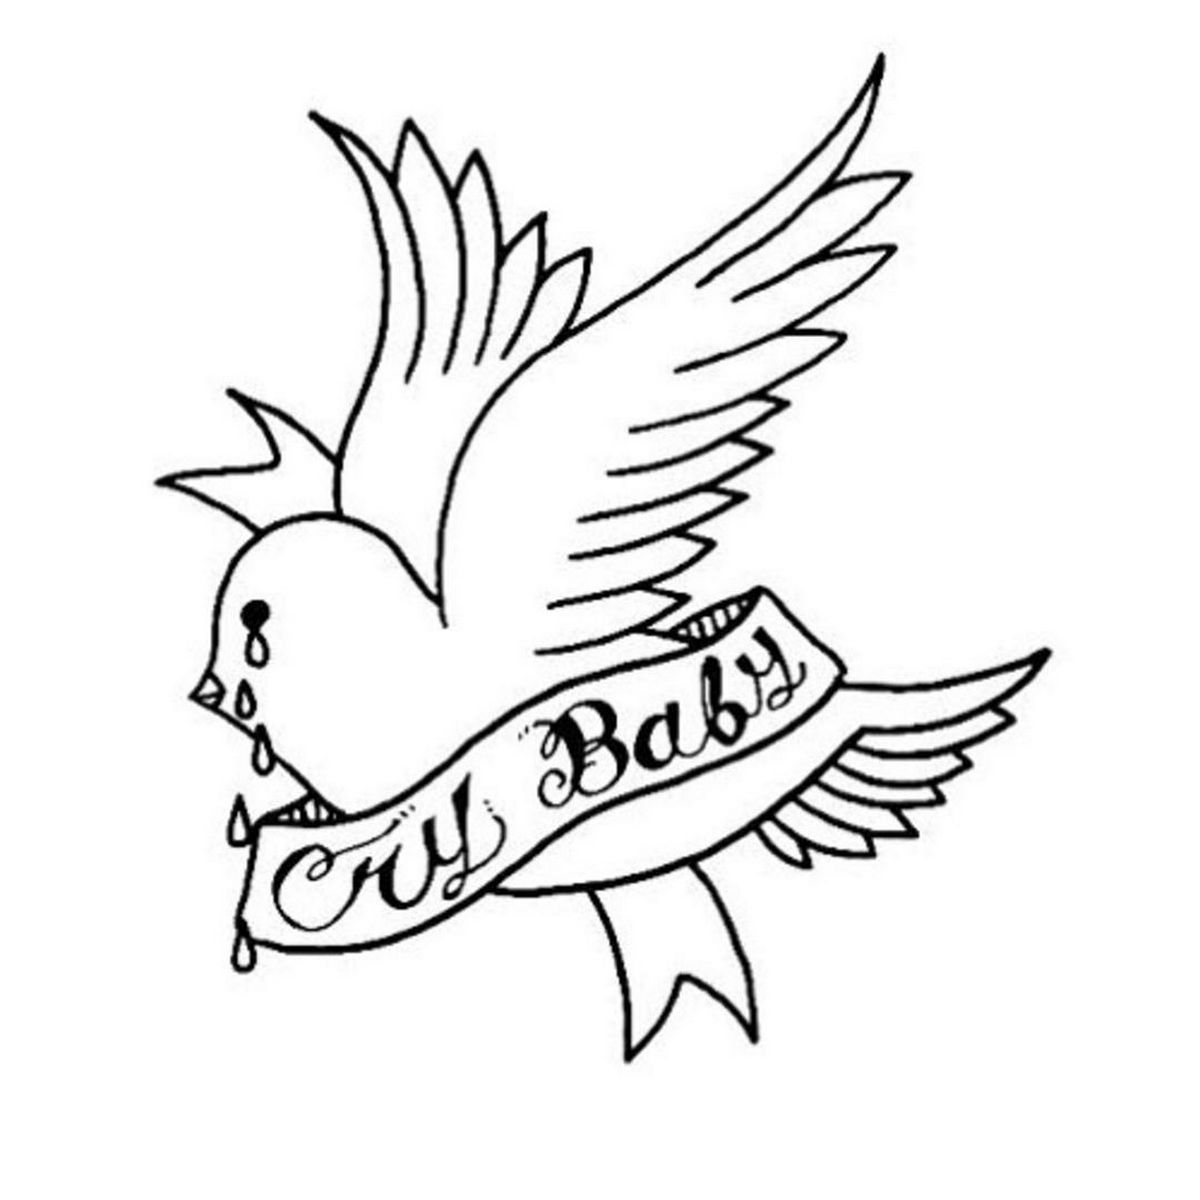 Disseny d'imatge genial: tatuatge de Lil Peep Crybaby